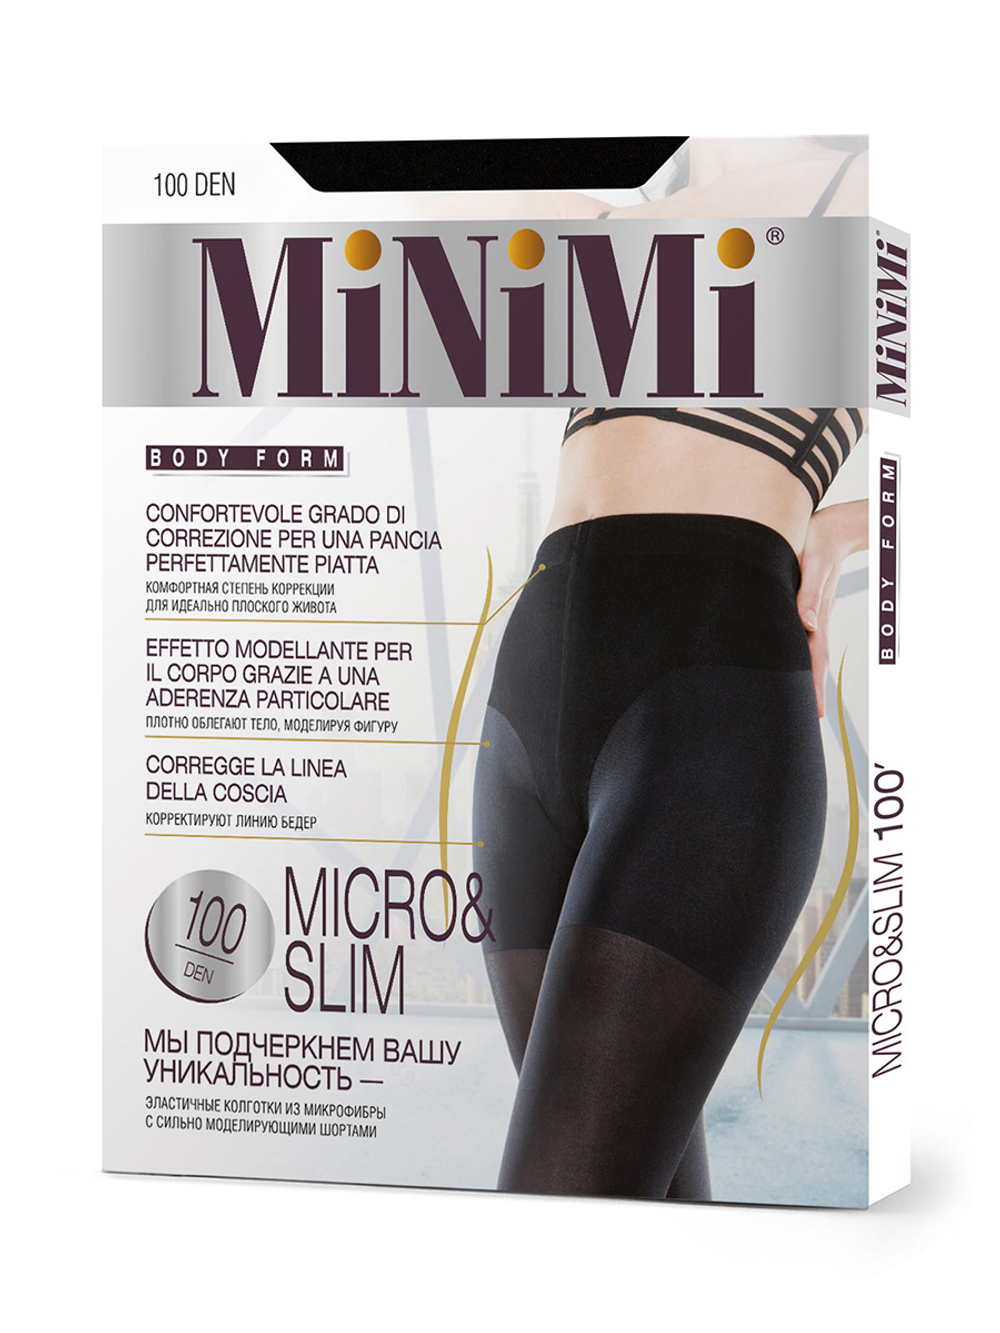 MiNiMi BodyForm Micro&Slim 100